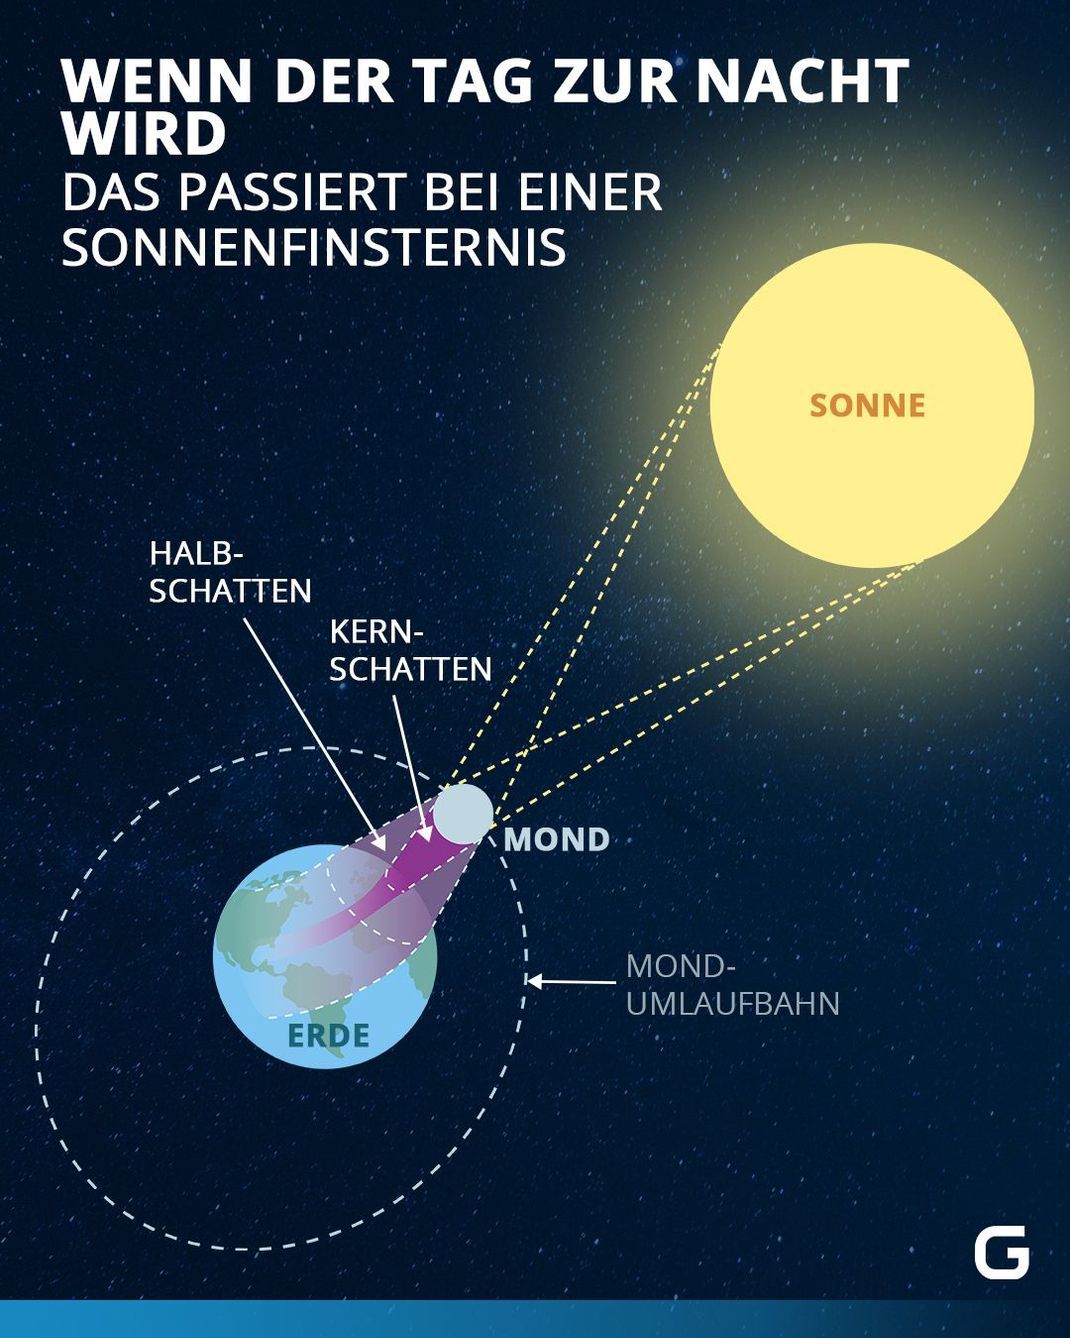 Bei einer Sonnenfinsternis wird die Sonne vom Mond nur im Kernschatten vollständig abgedeckt. Im restlichen Teil bleibt die Sonne im Halbschatten zum Teil zu sehen.